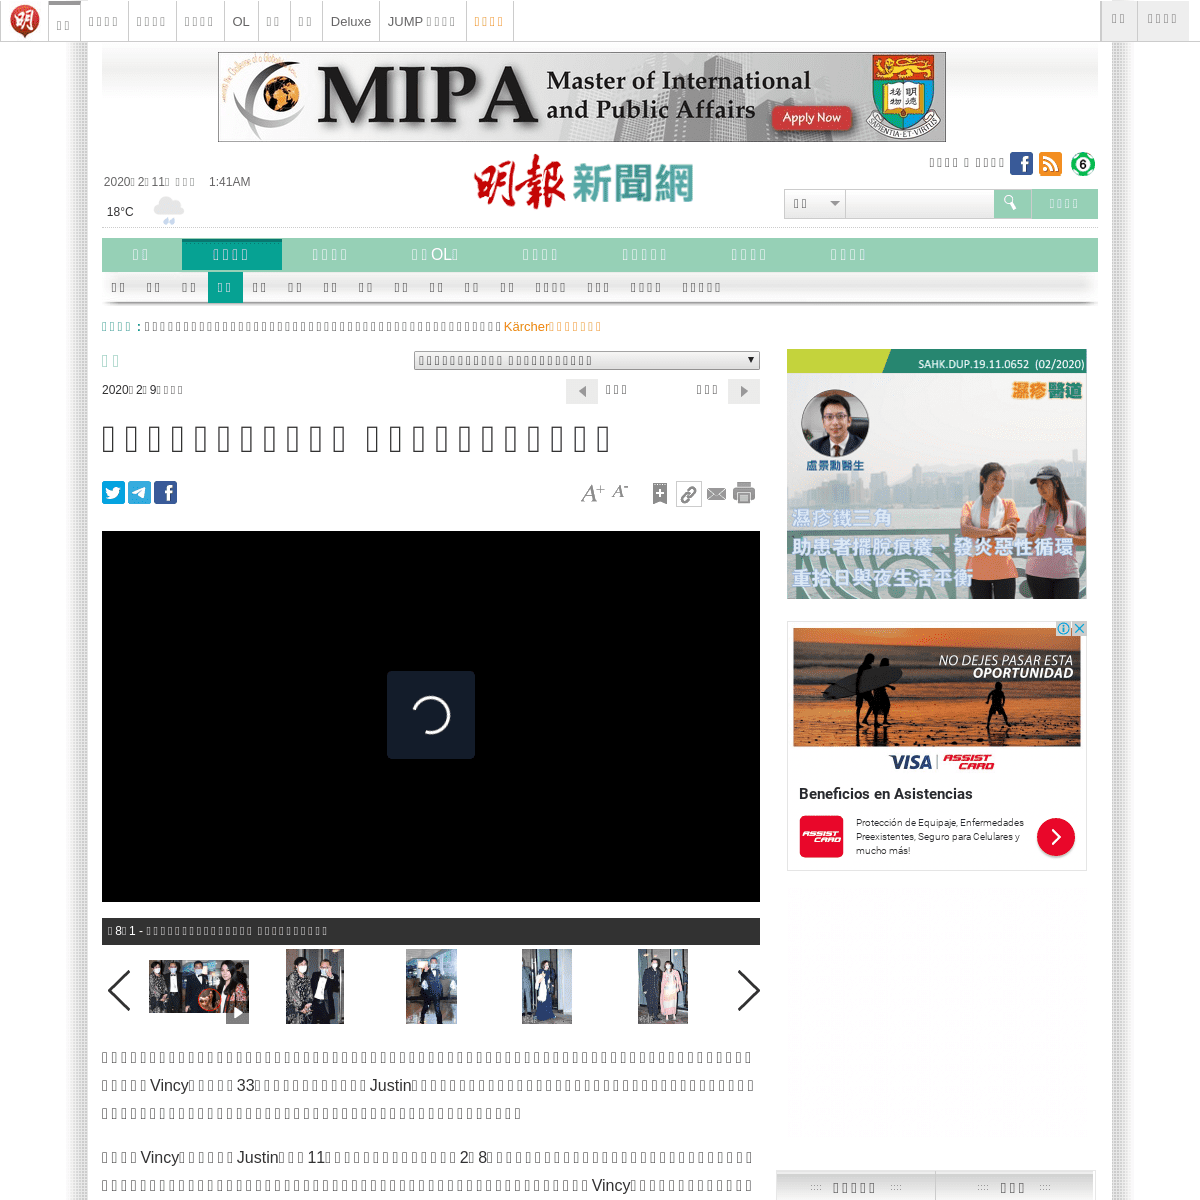 A complete backup of news.mingpao.com/pns/%E5%A8%9B%E6%A8%82/article/20200209/s00016/1581185222553/%E6%A5%8A%E6%B0%B8%E6%99%B4%E